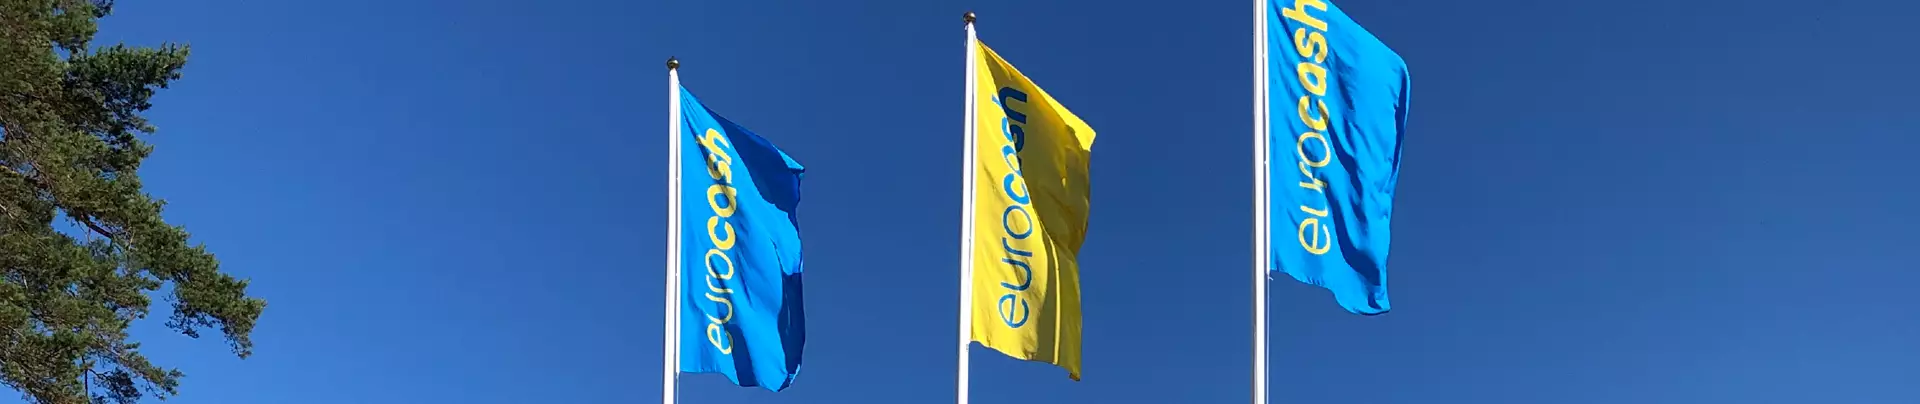 Eurocash-flaggor som vajar i vinden